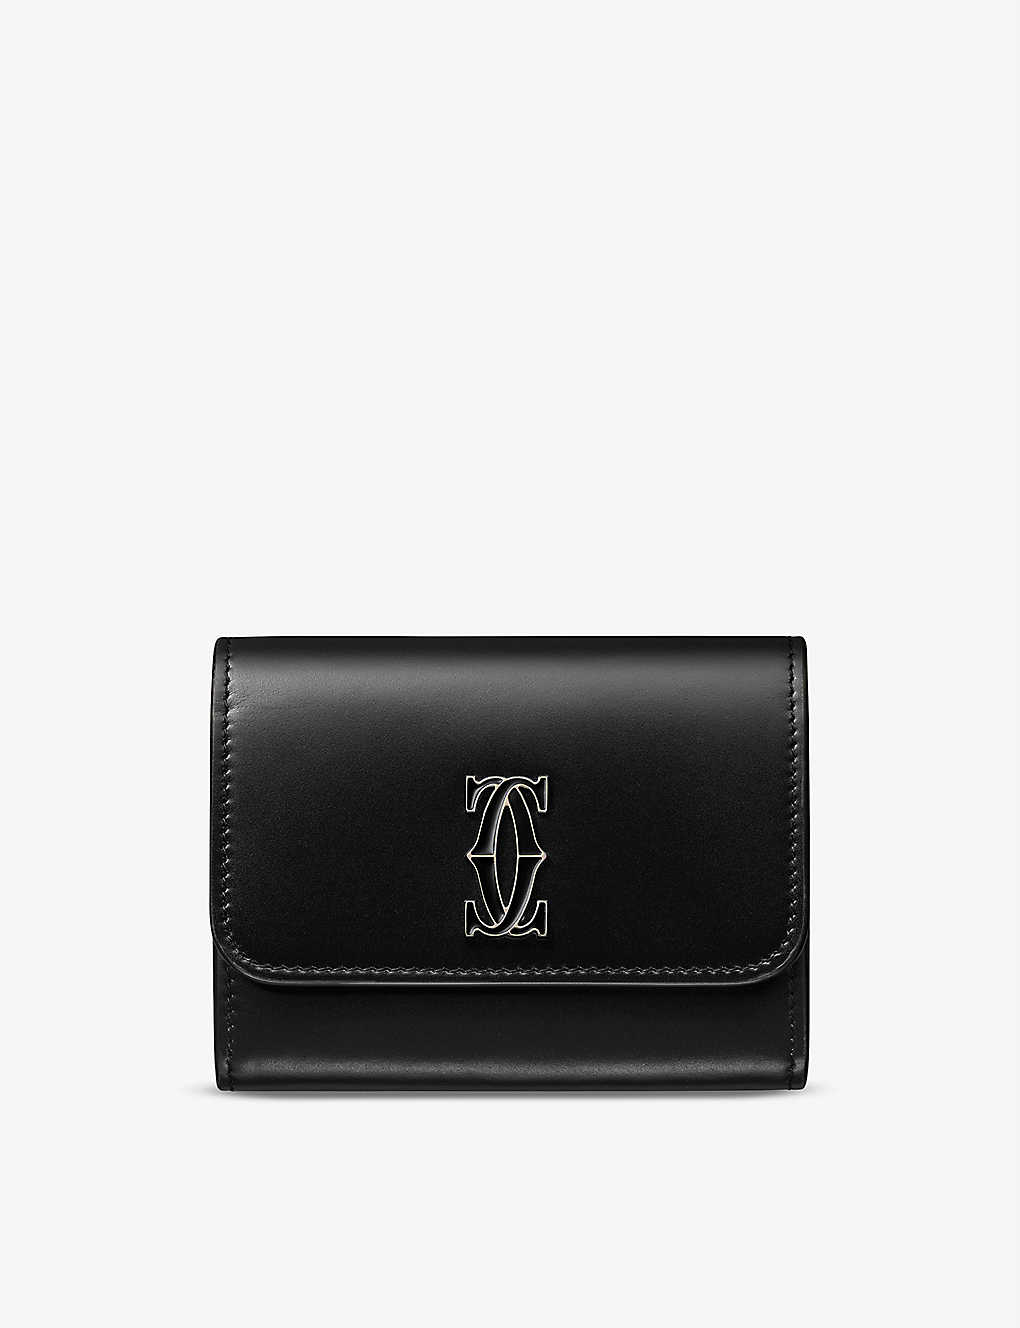 Double C de Cartier mini leather wallet